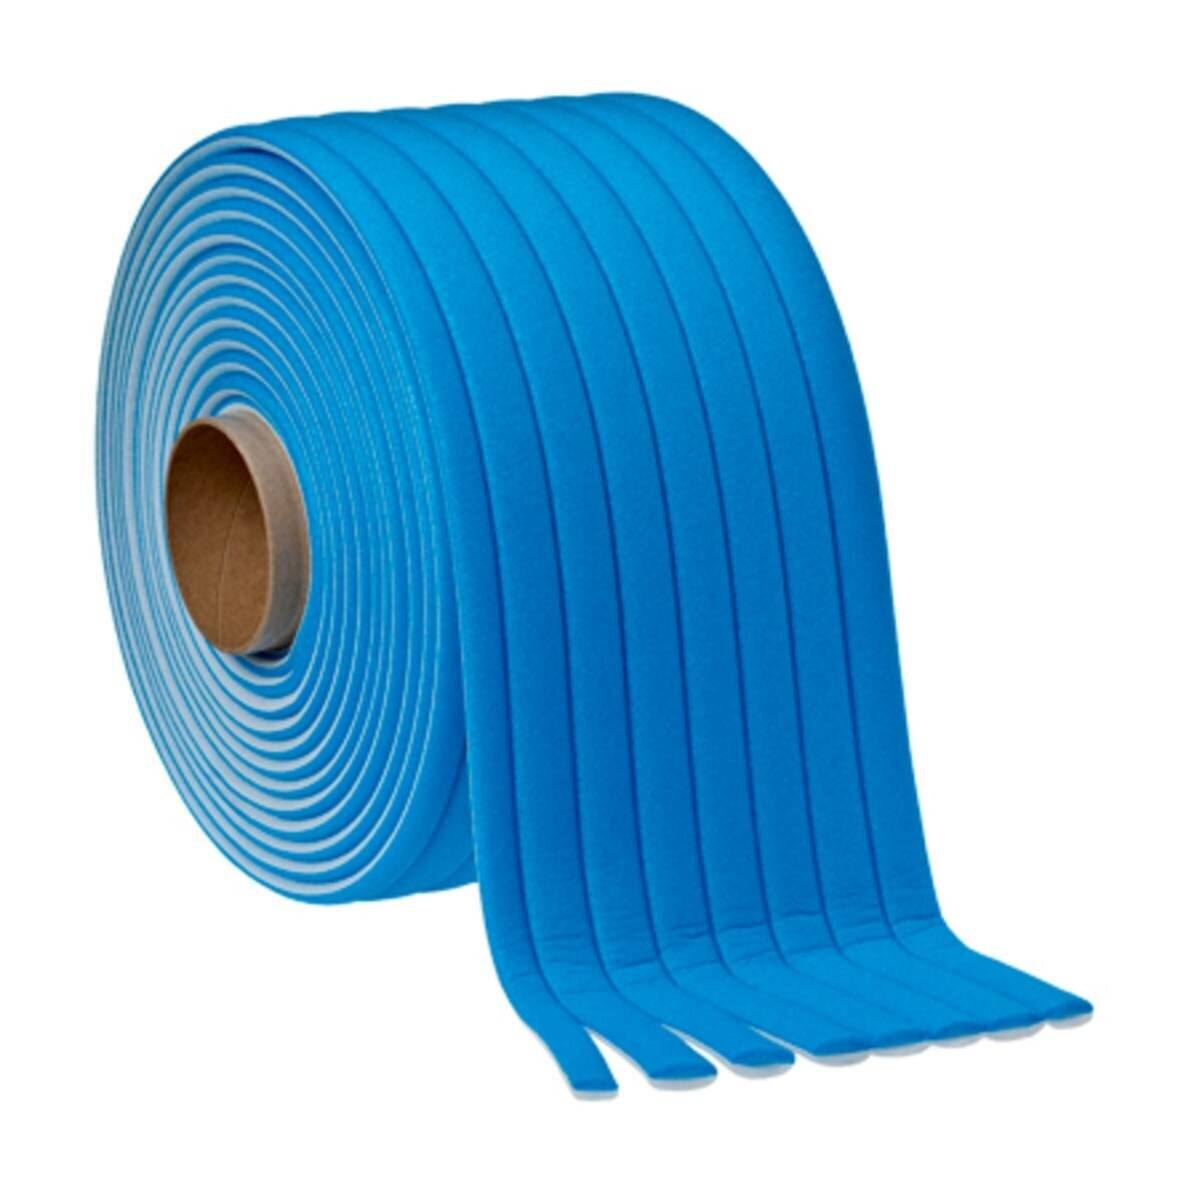 3M Soft Edge Foam Masking Tape PLUS, blauw, 21 mm x 49 m, 50421